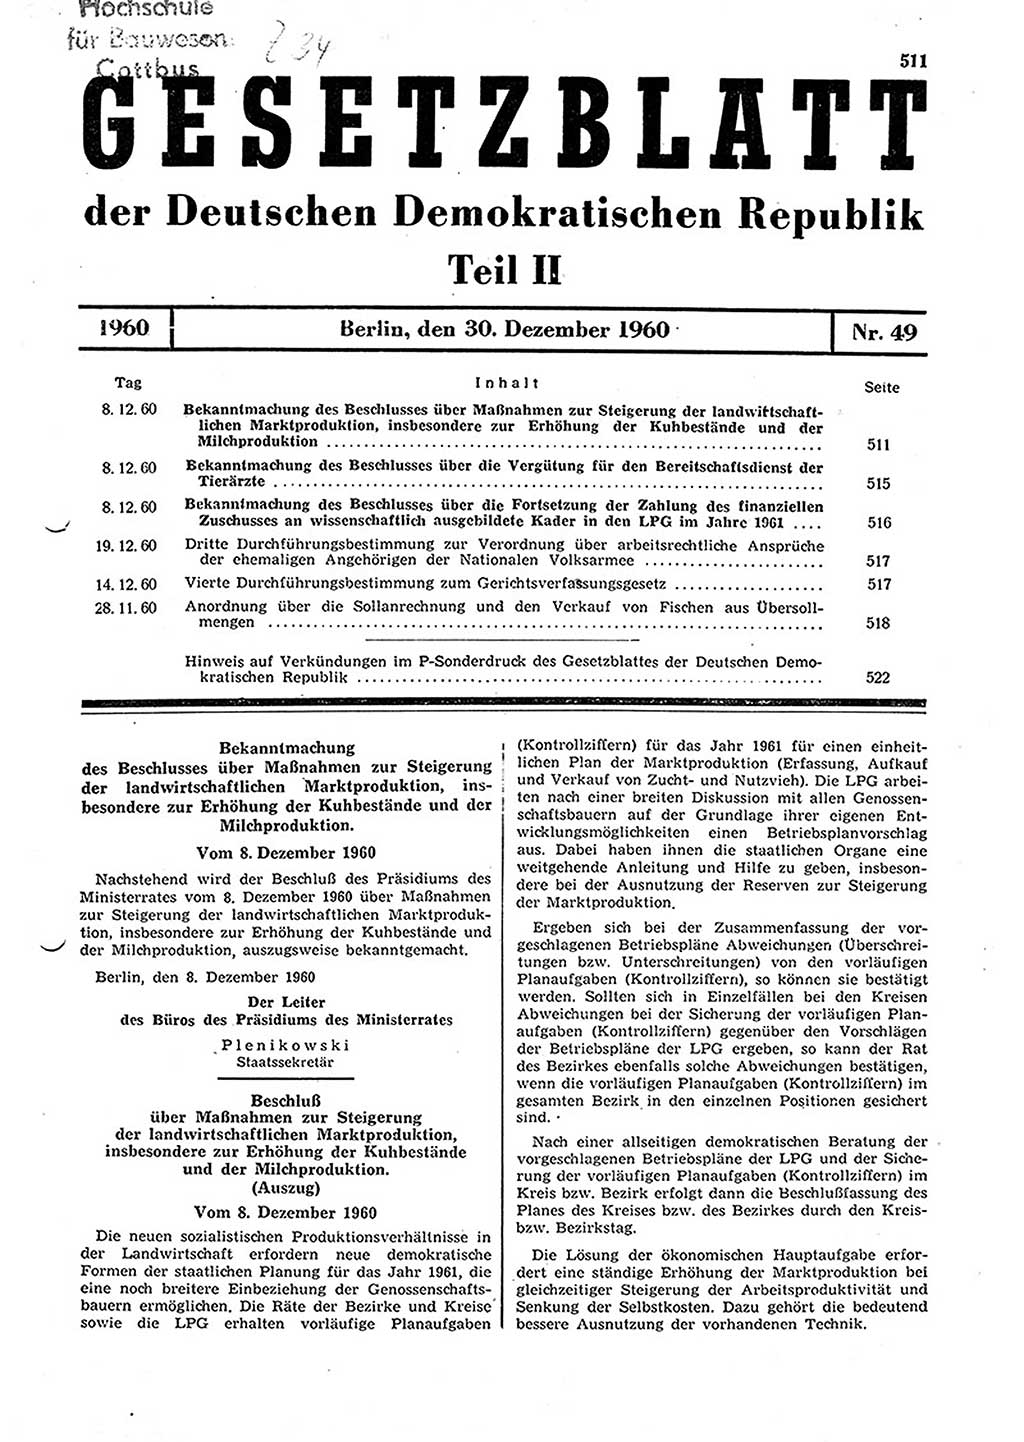 Gesetzblatt (GBl.) der Deutschen Demokratischen Republik (DDR) Teil ⅠⅠ 1960, Seite 511 (GBl. DDR ⅠⅠ 1960, S. 511)